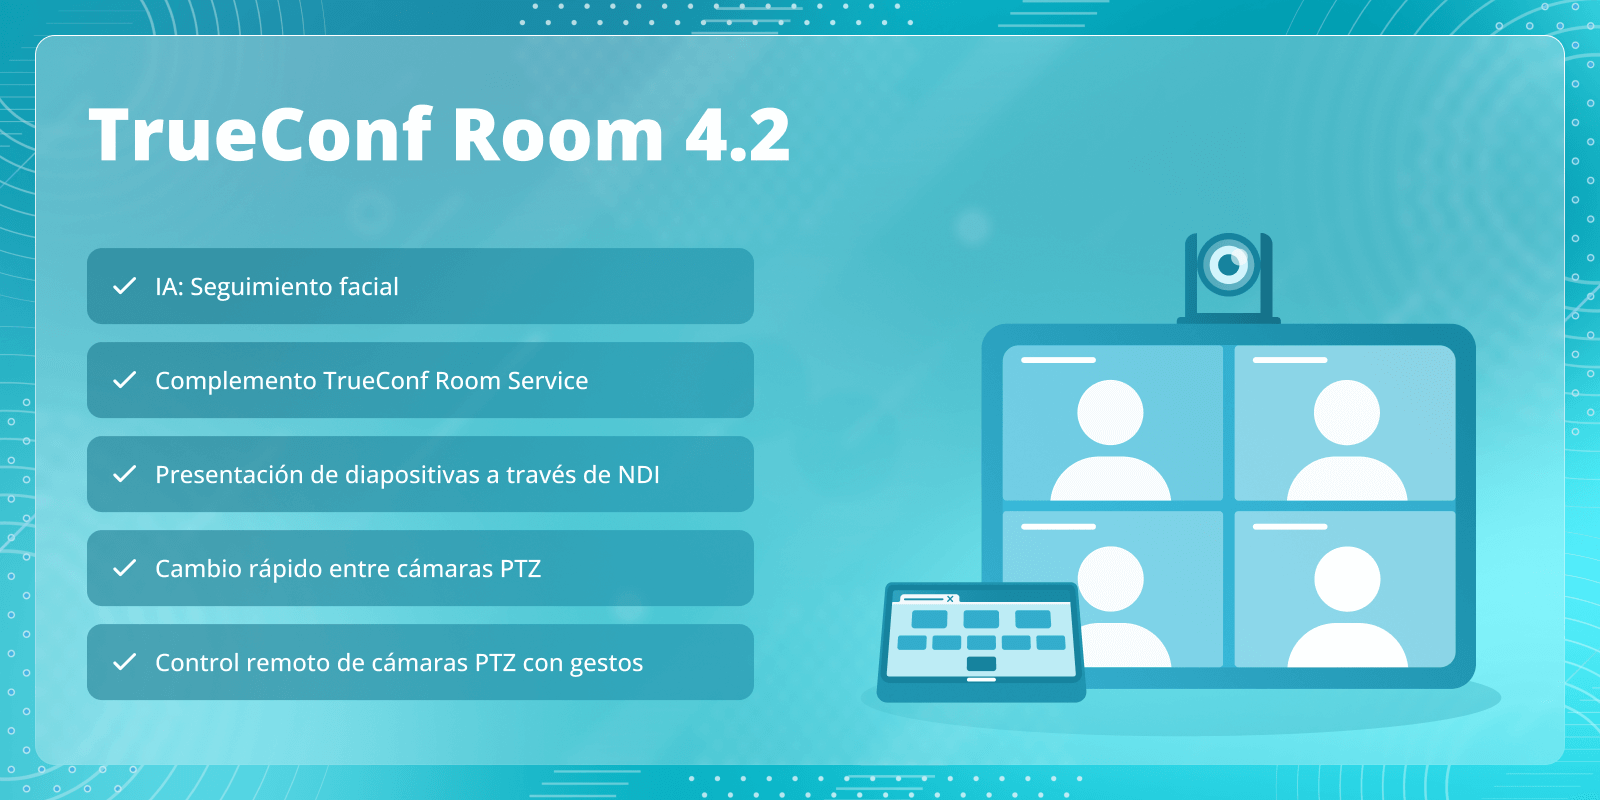 TrueConf Room 4.2: Complemento TrueConf Room Service y seguimiento facial 6